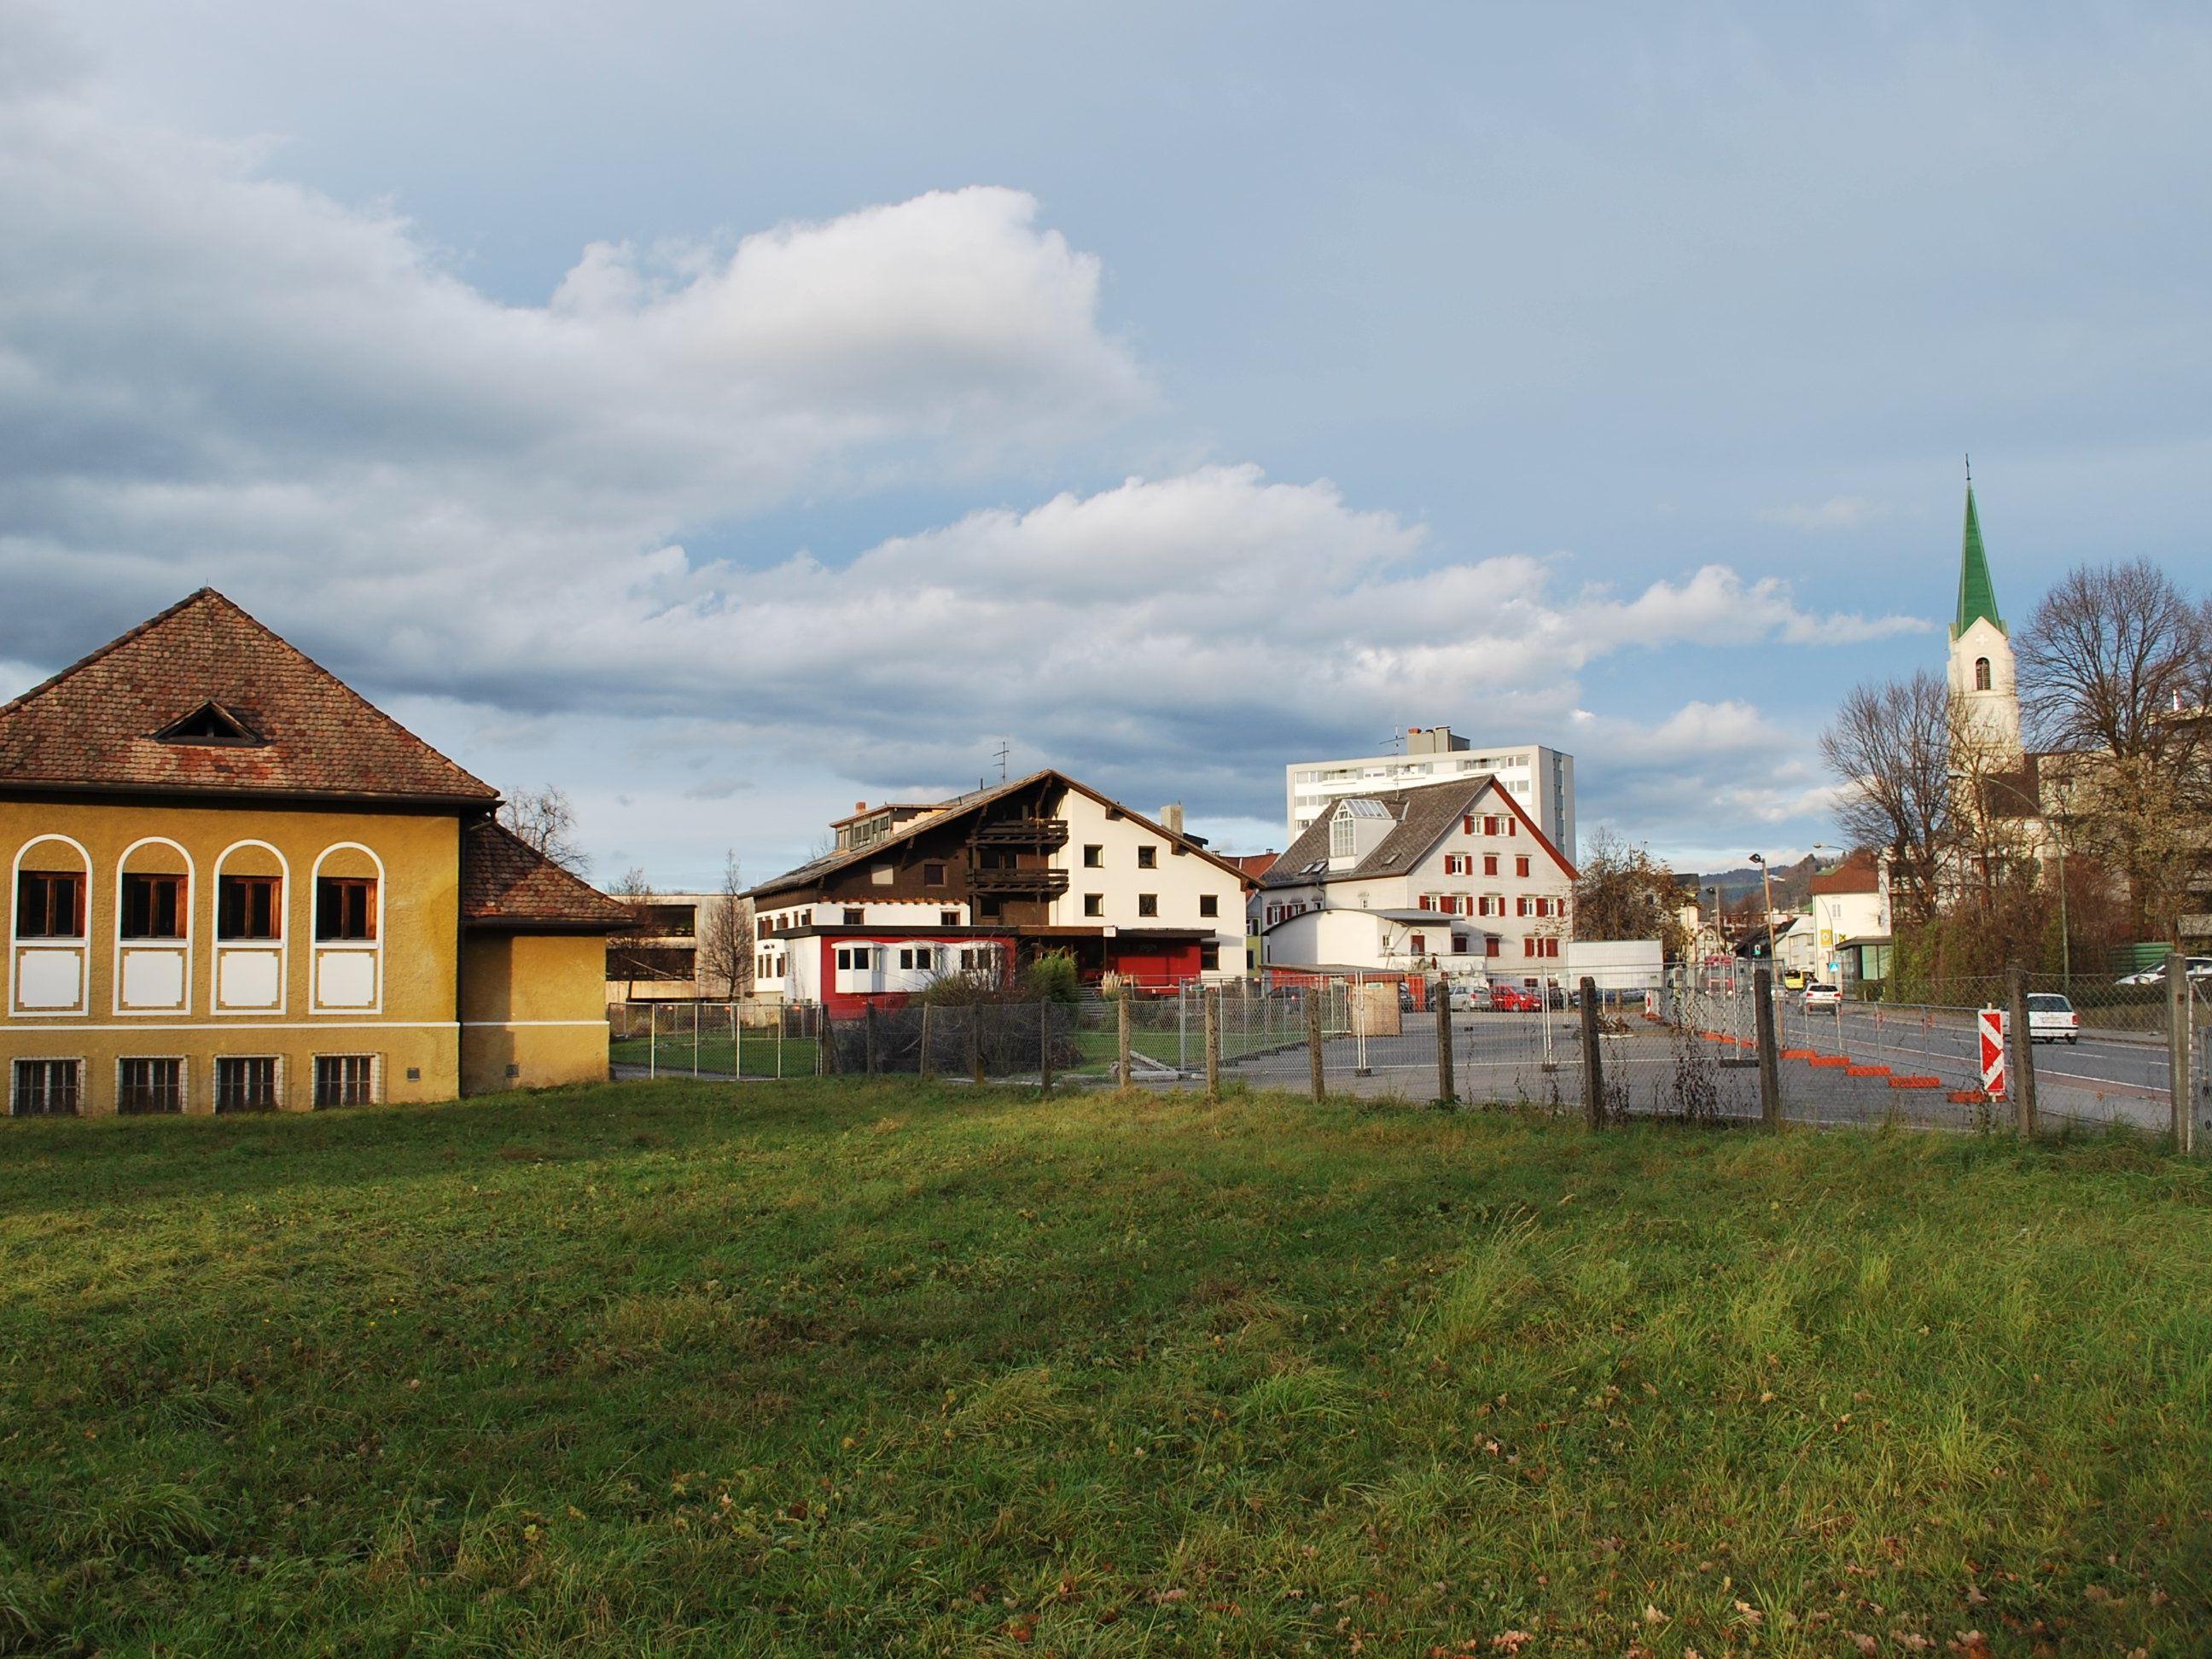 Gemäß KulturInitiative Hatlerdorf muss das Ensemble Turnhalle, Rose mit Grünfläche und Löwen unbedingt erhalten bleiben.